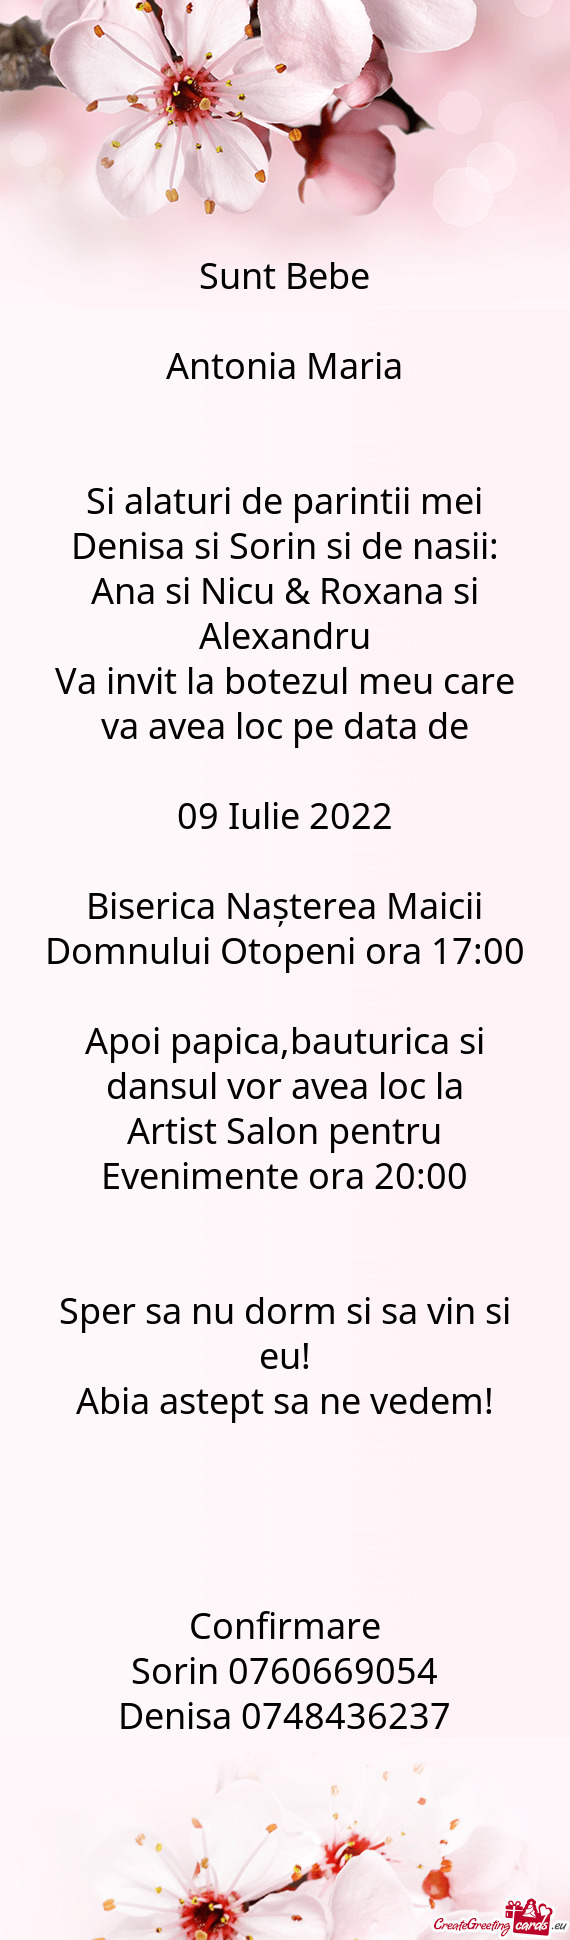 Artist Salon pentru Evenimente ora 20:00